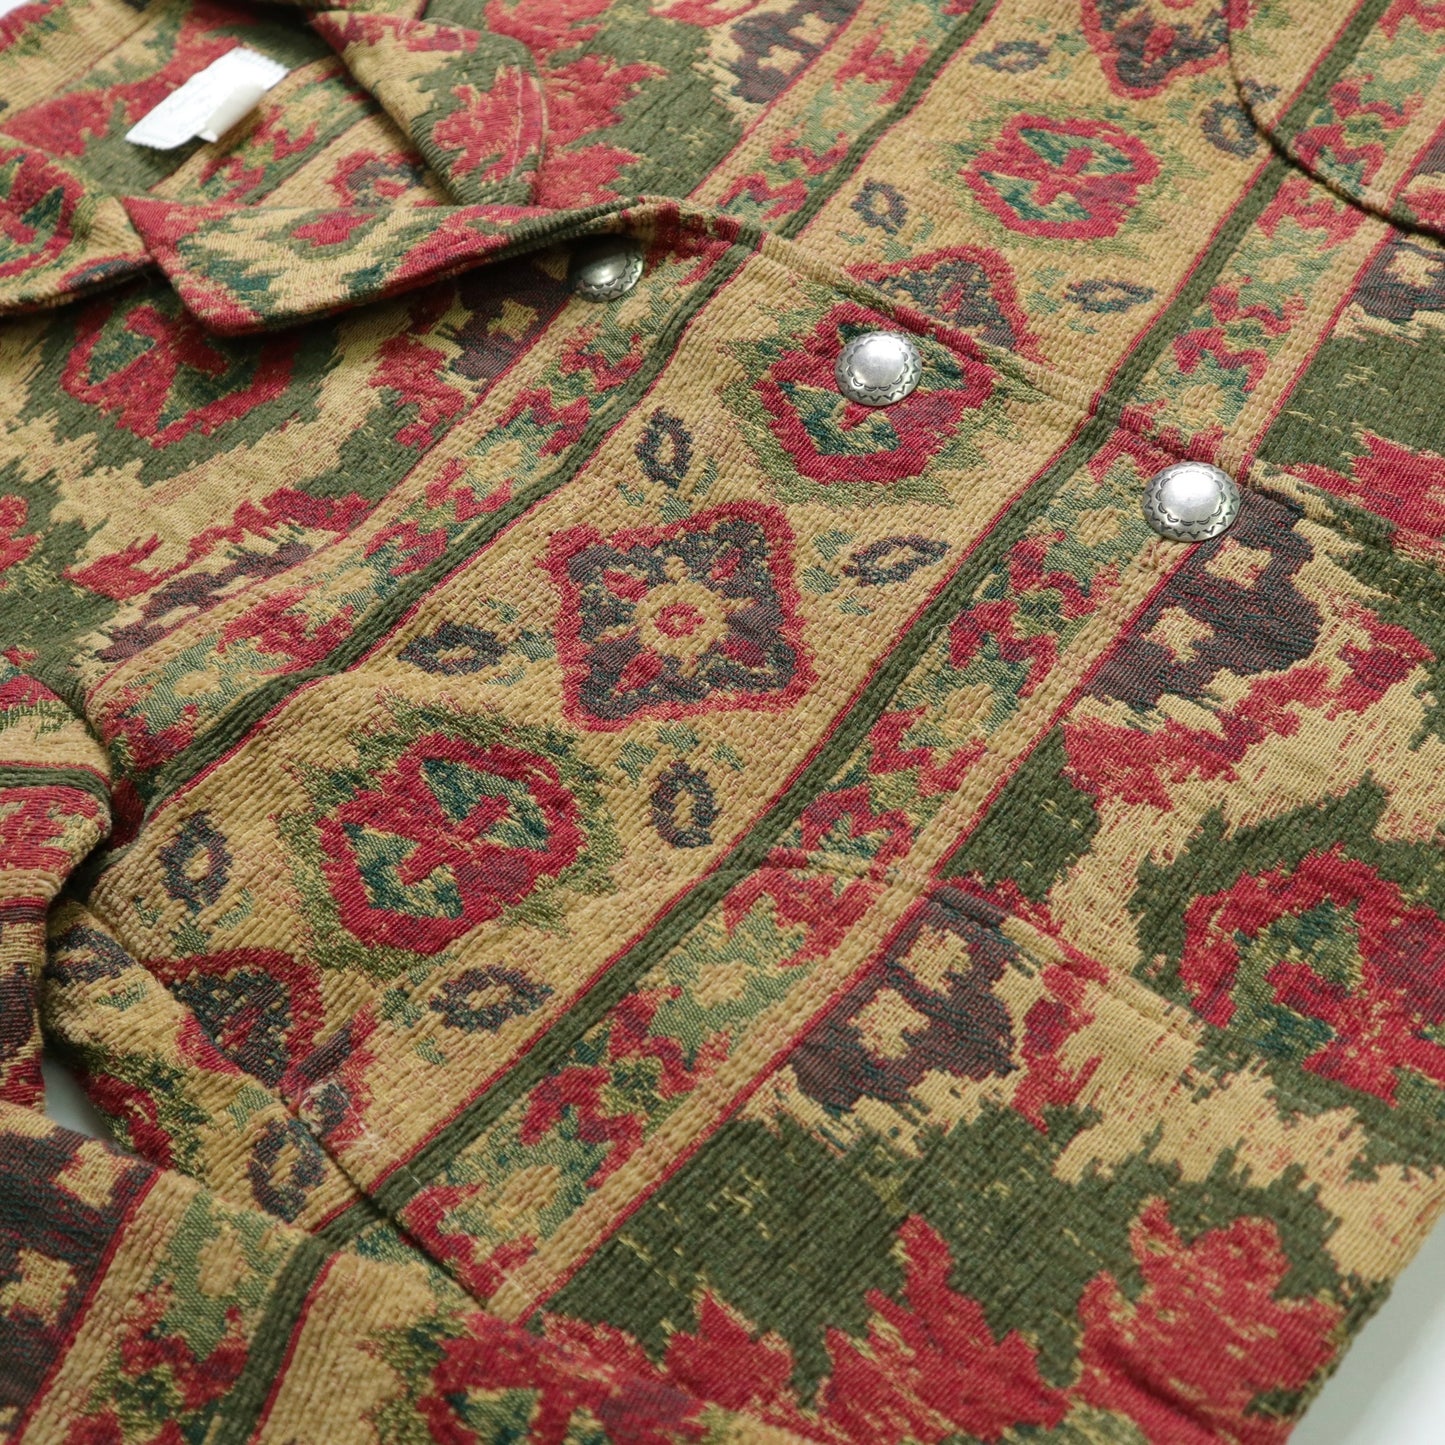 90s 美國製 古典圖騰花毯外套